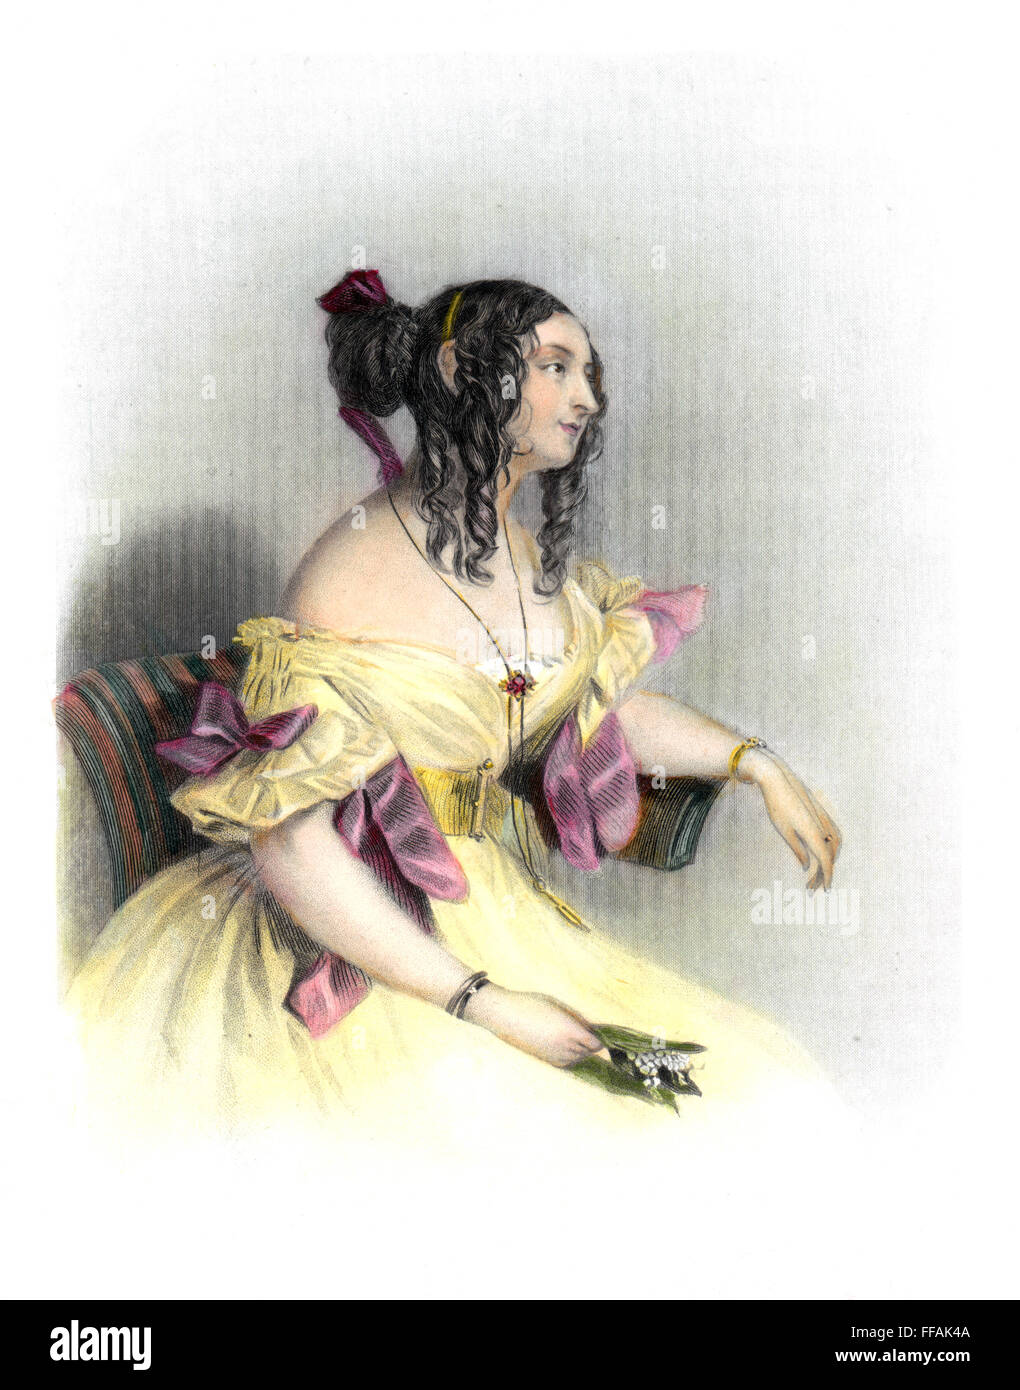 La comtesse TERESA GUICCIOLI /n(1801 ?-1873). La noblesse italienne et maîtresse de George Gordon Byron, Lord Byron. Gravure crépi, Anglais, 19e siècle. Banque D'Images